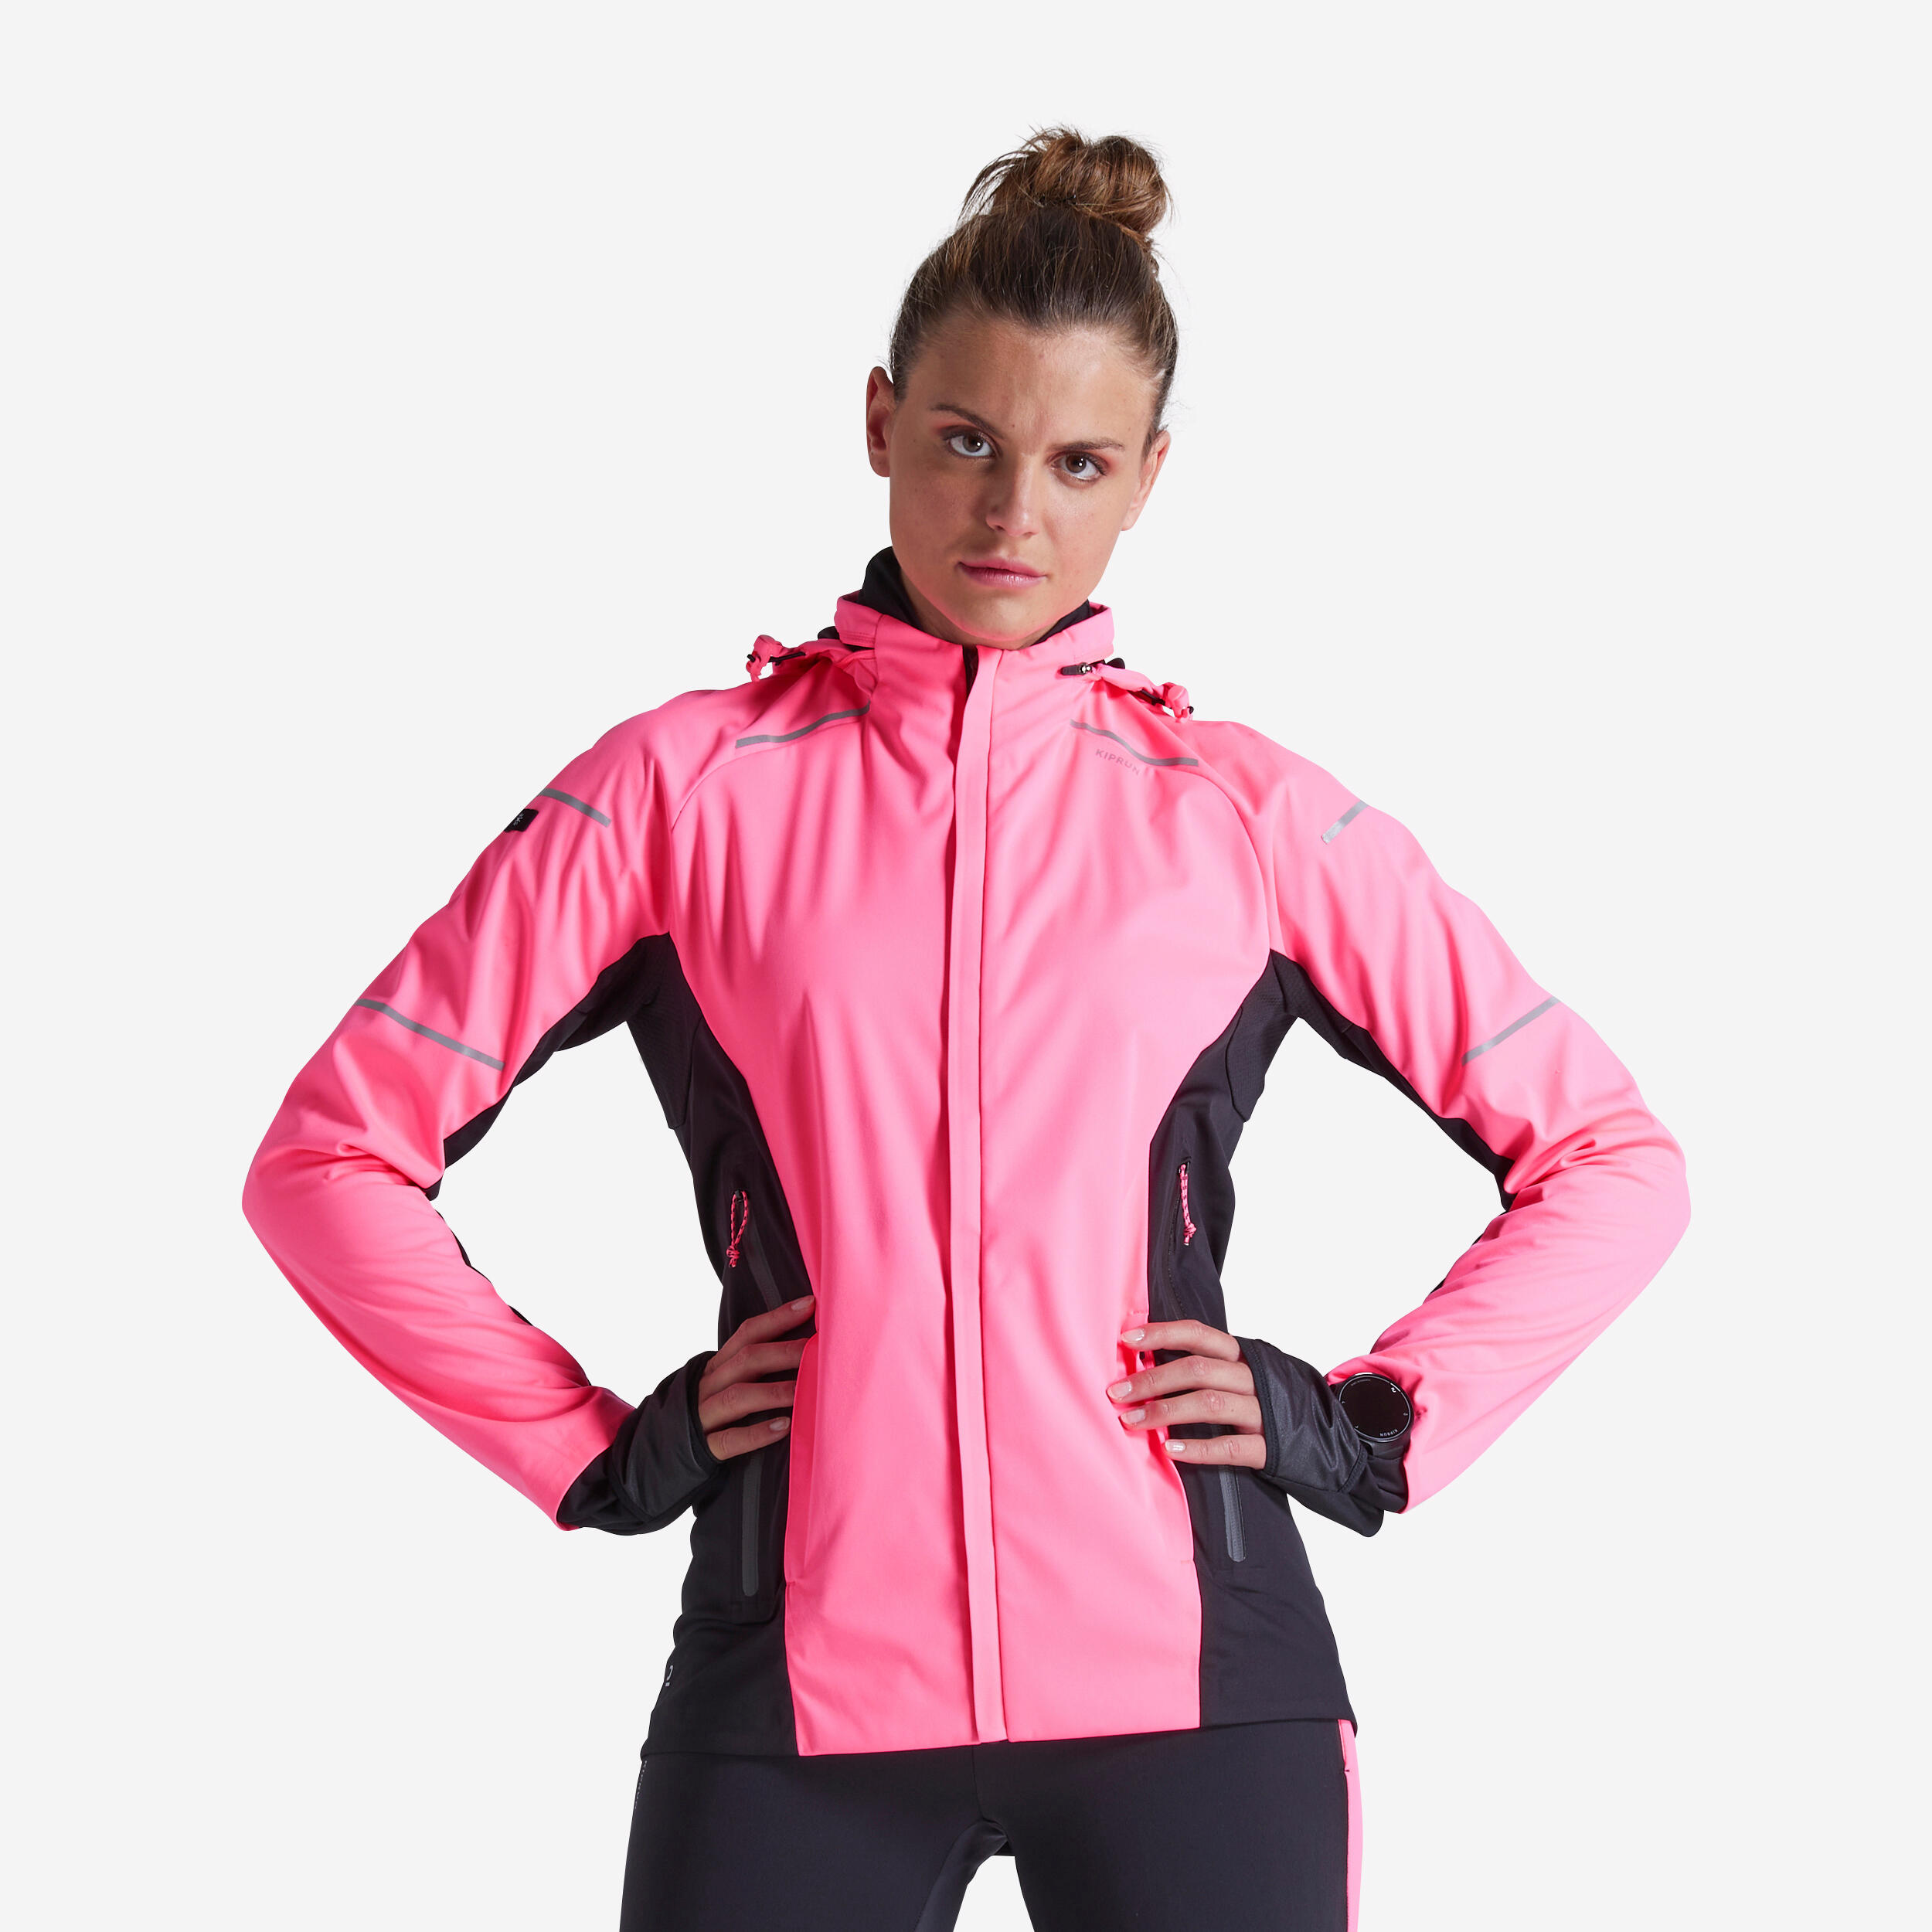 FitsT4 Sportjacke Damen Laufjacke Langarm Trainingsjacke voll Reißverschluss UPF 50 Fitness und Radfahren Rash Guard schnelltrockend für Wanderung Laufen 